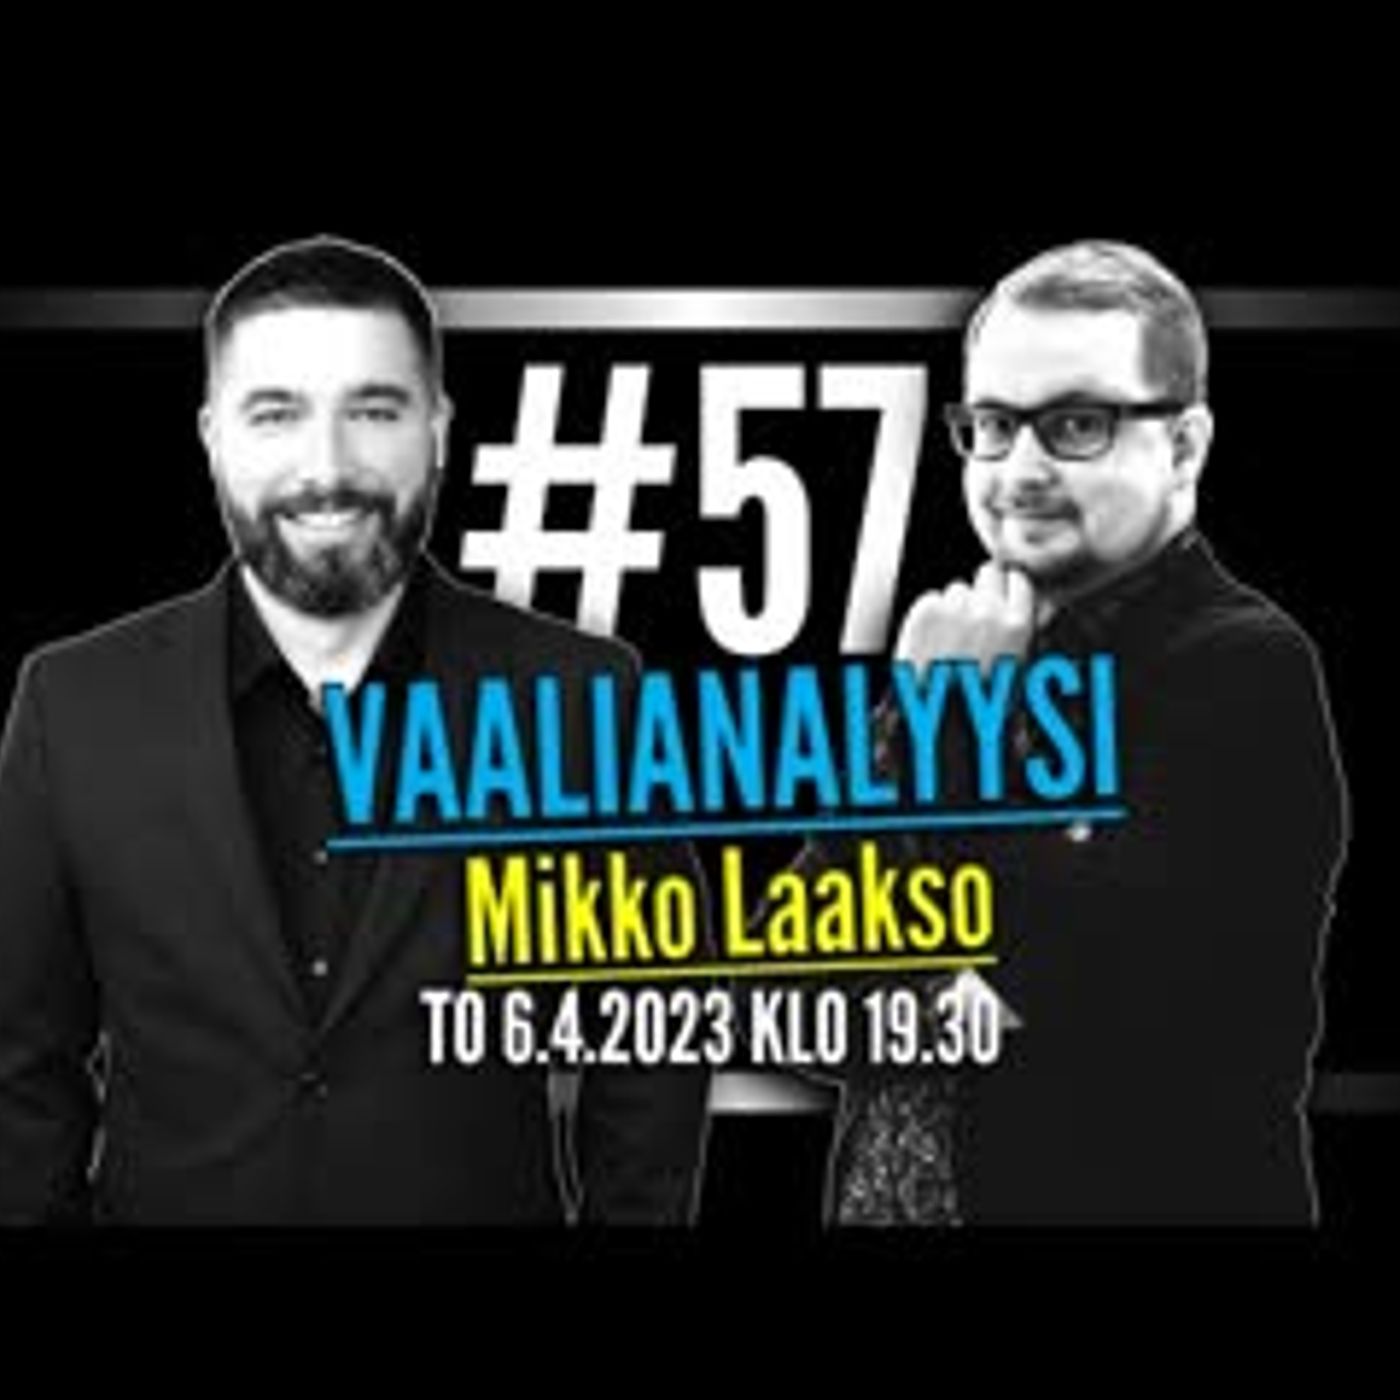 #57 - Vaalianalyysi - Mikko Laakso ja Sebastian Stenfors